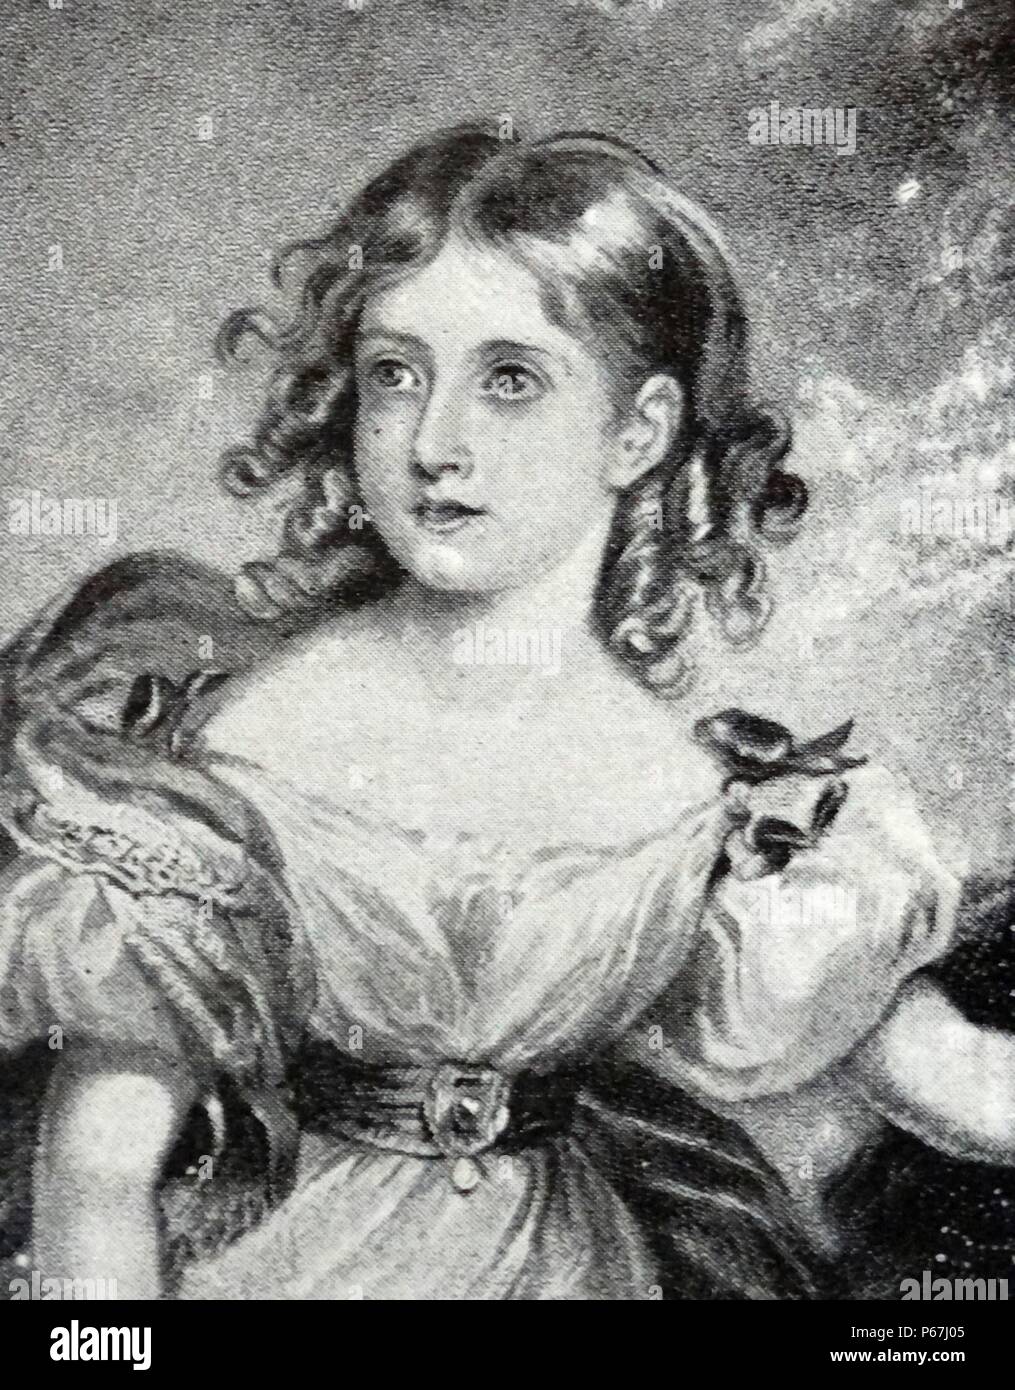 Retrato de fecha 1831 de la Reina Victoria de Gran Bretaña a la edad de 12 años Foto de stock